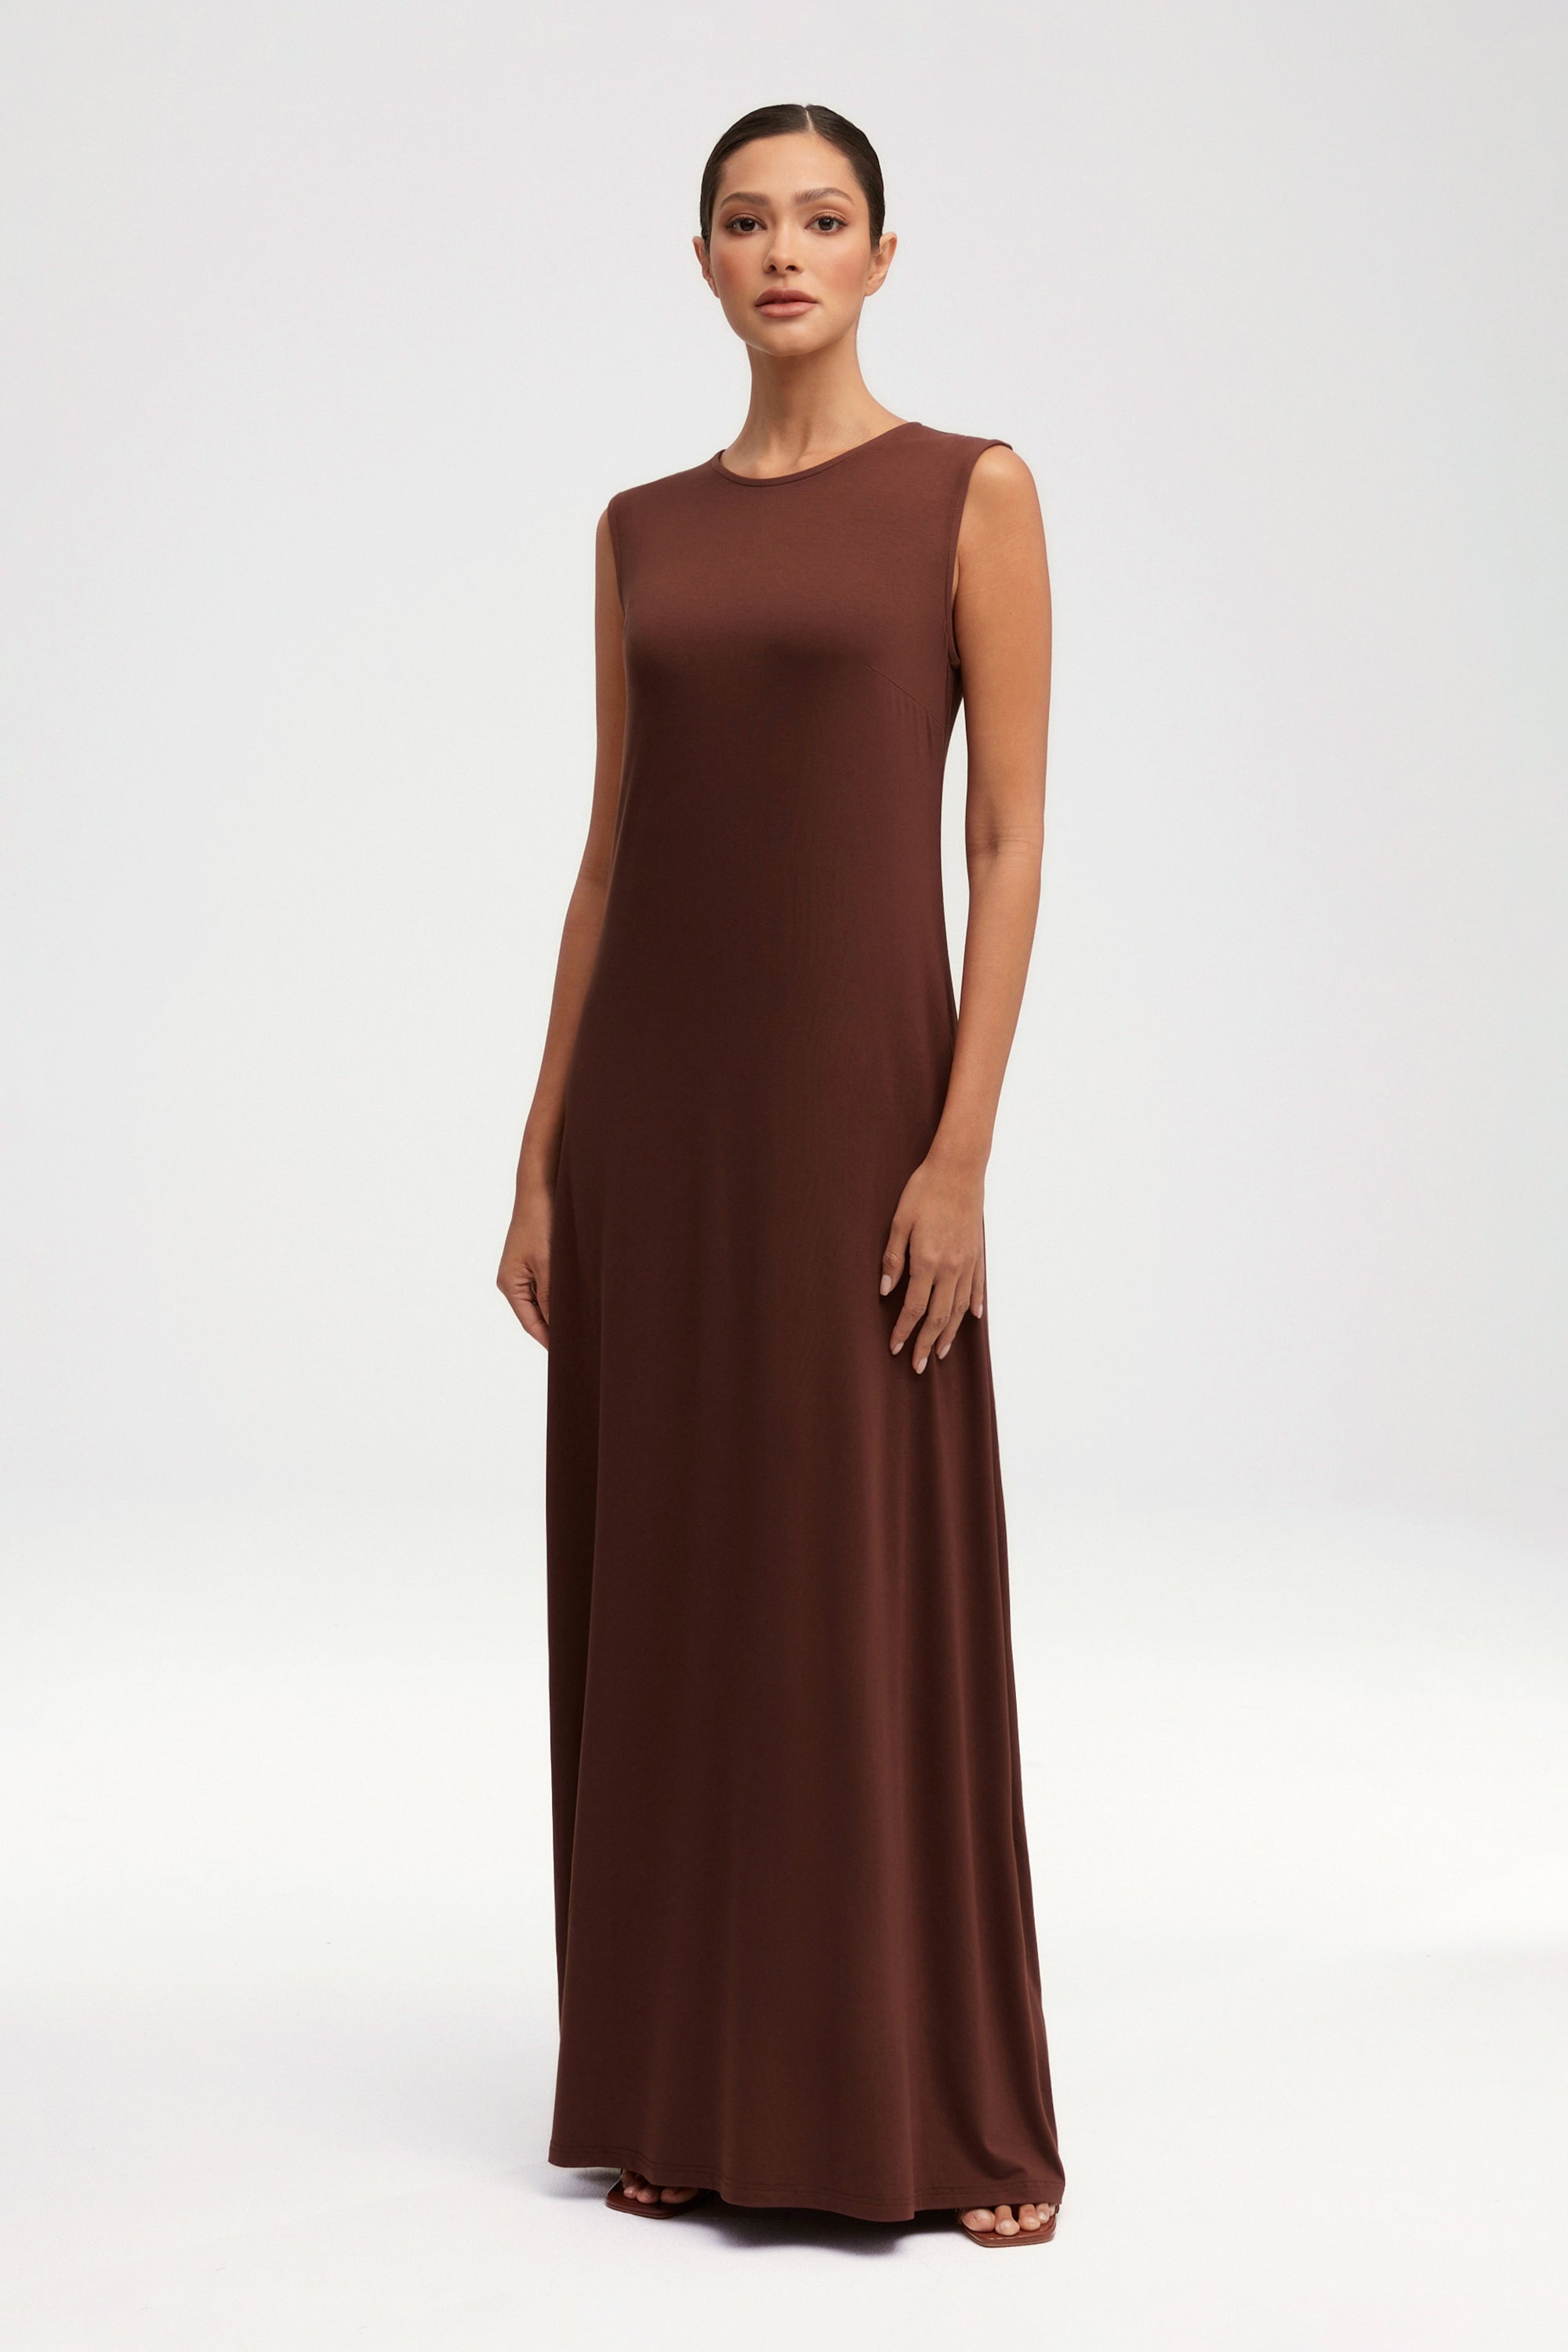 Jenin Jersey Open Abaya & Maxi Dress Set - Chocolate Clothing saigonodysseyhotel 